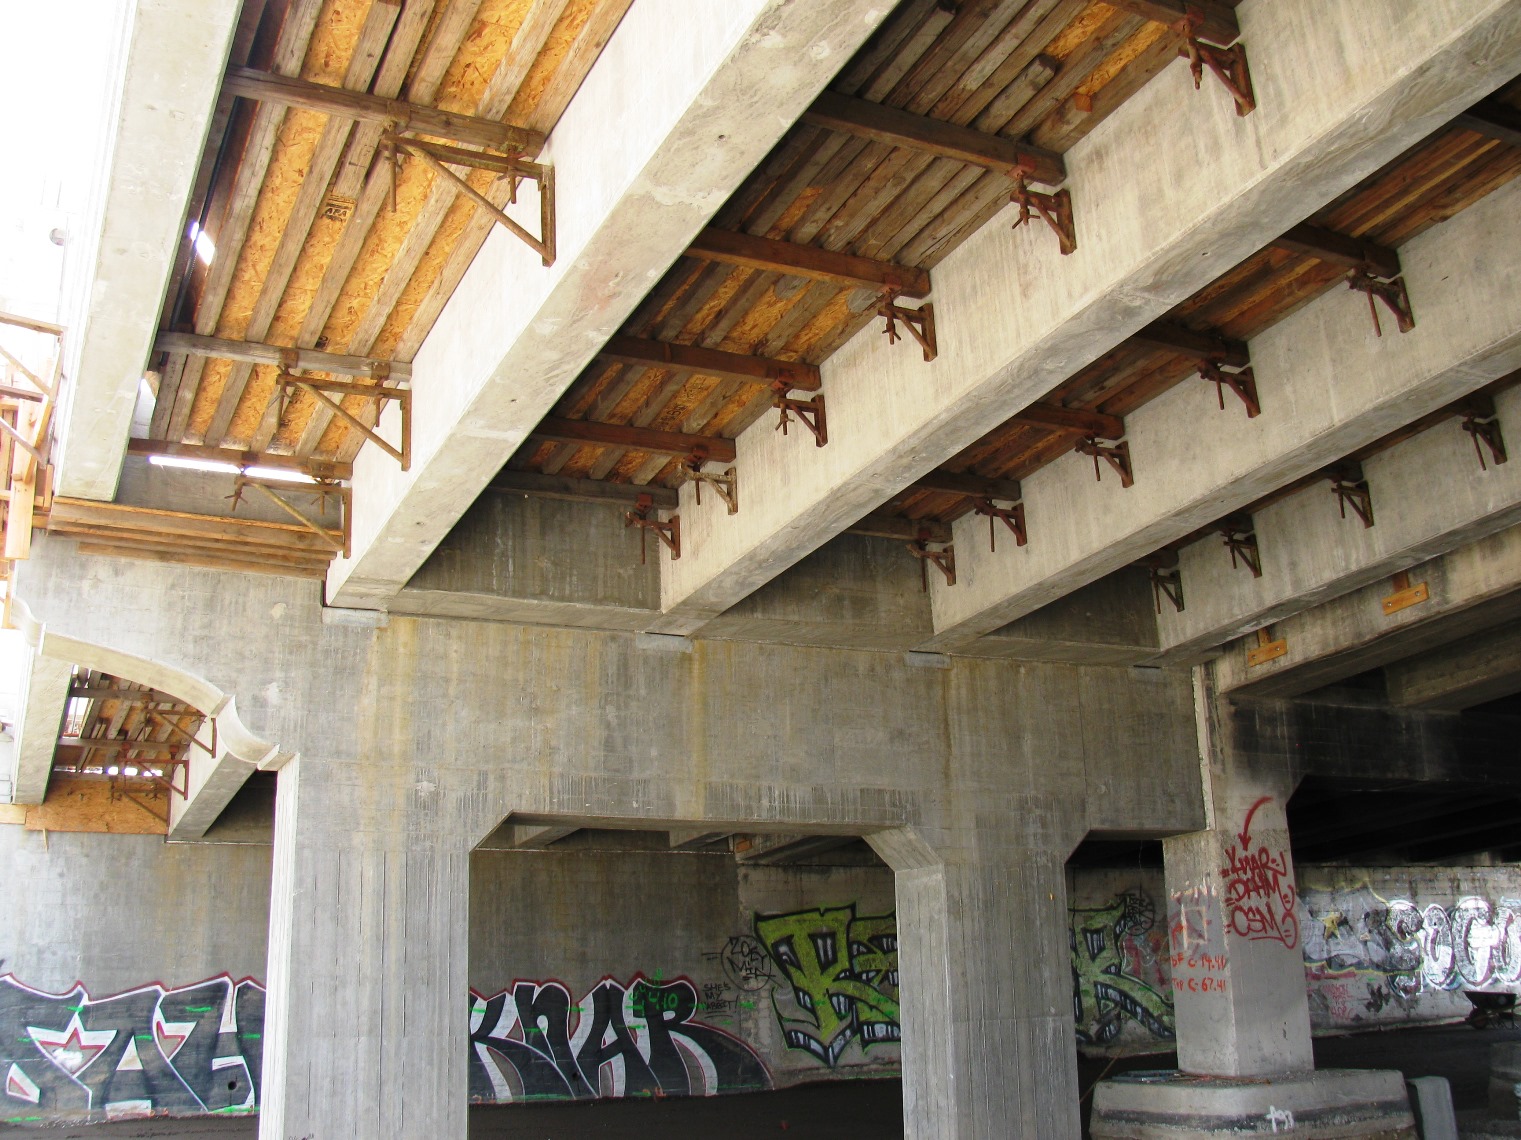 1st Street Viaduct - Los Angeles, CA